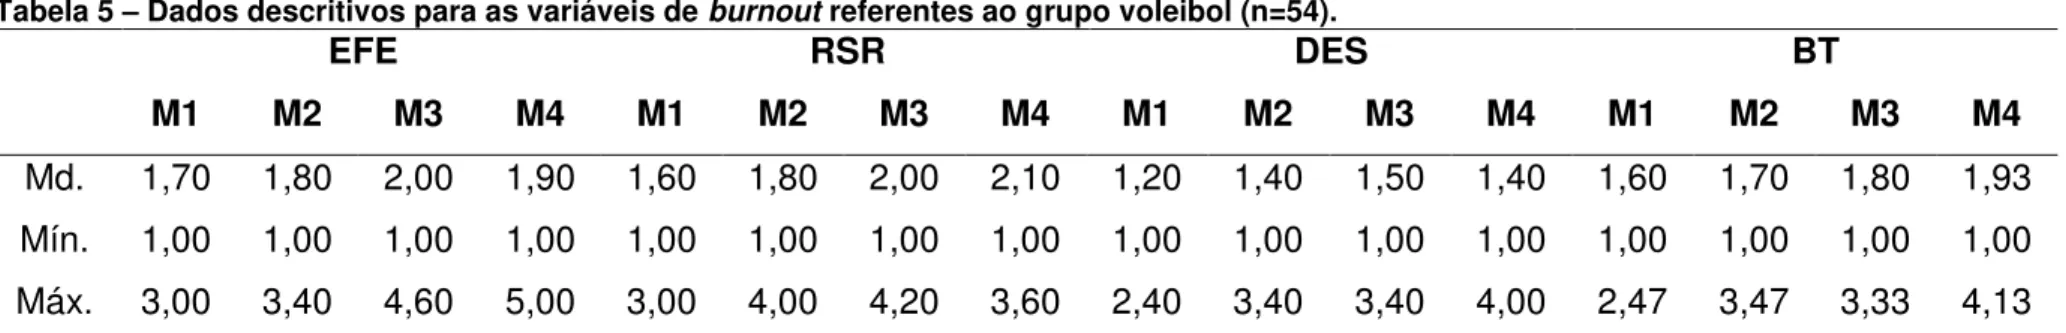 Gráfico 2 - Medianas das dimensões de burnout e do burnout total durante a temporada para o grupo voleibol (n=54)